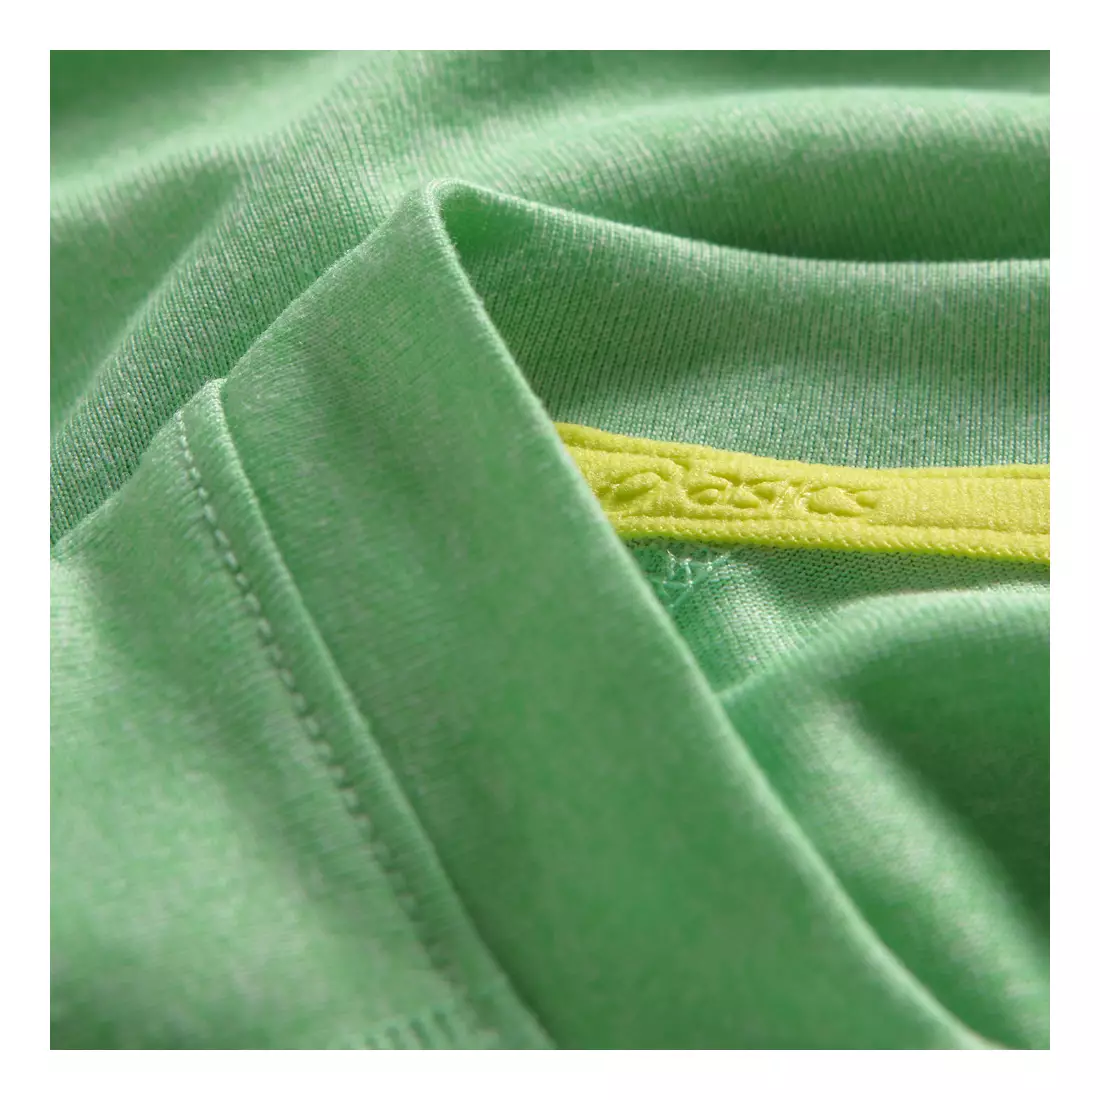 ASICS 110519-0489 SOUKAI GRAPHIC TOP - tricou alergare pentru bărbați, culoare: Verde